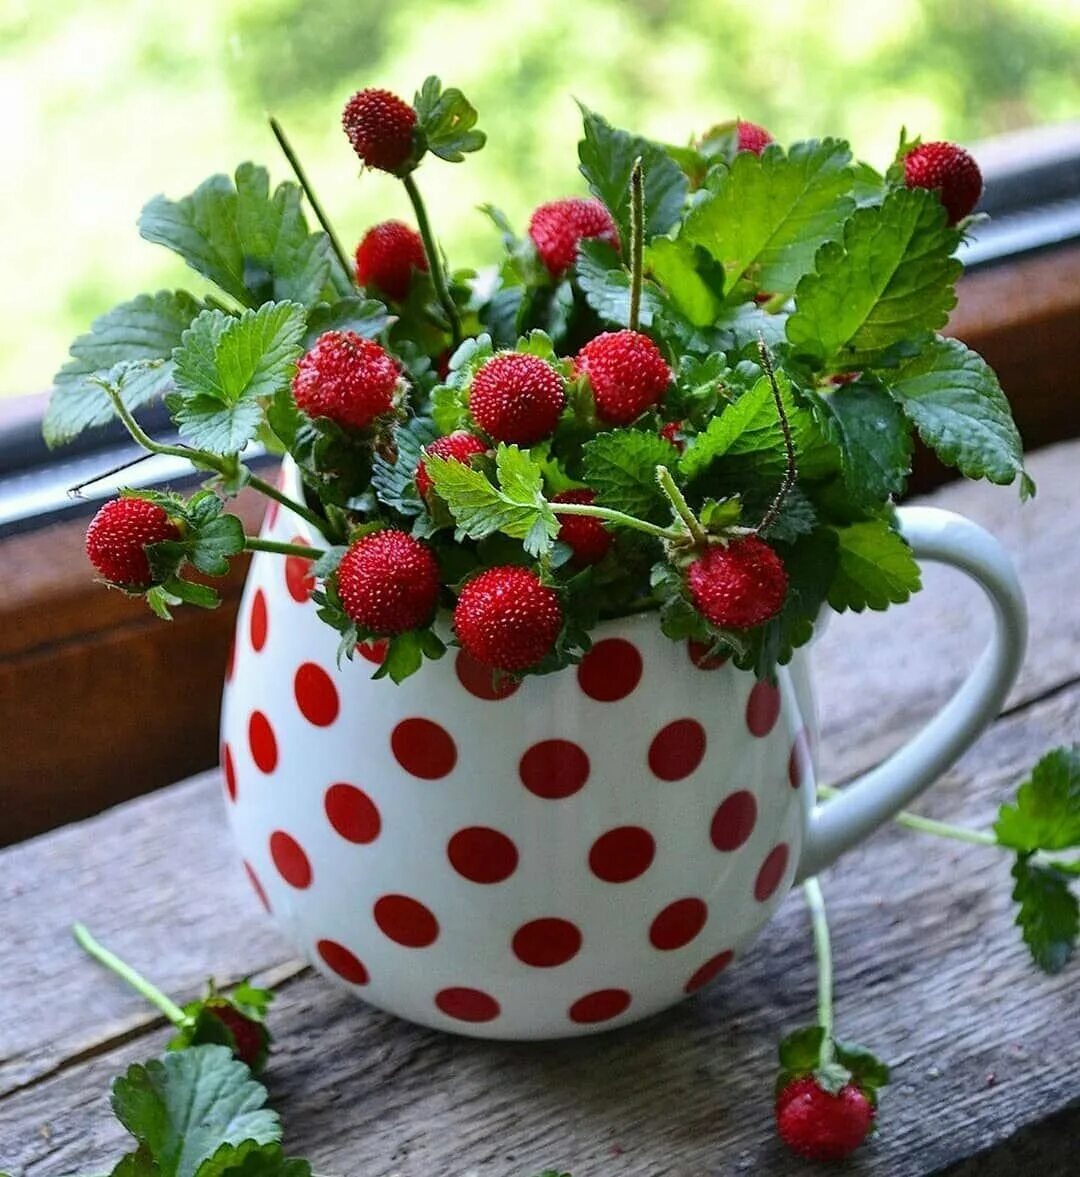 Доброе утро хорошего настроения. Доброе утро и отличного настроения. Доброго утра и отличного настроения на весь день. Летние ягоды.